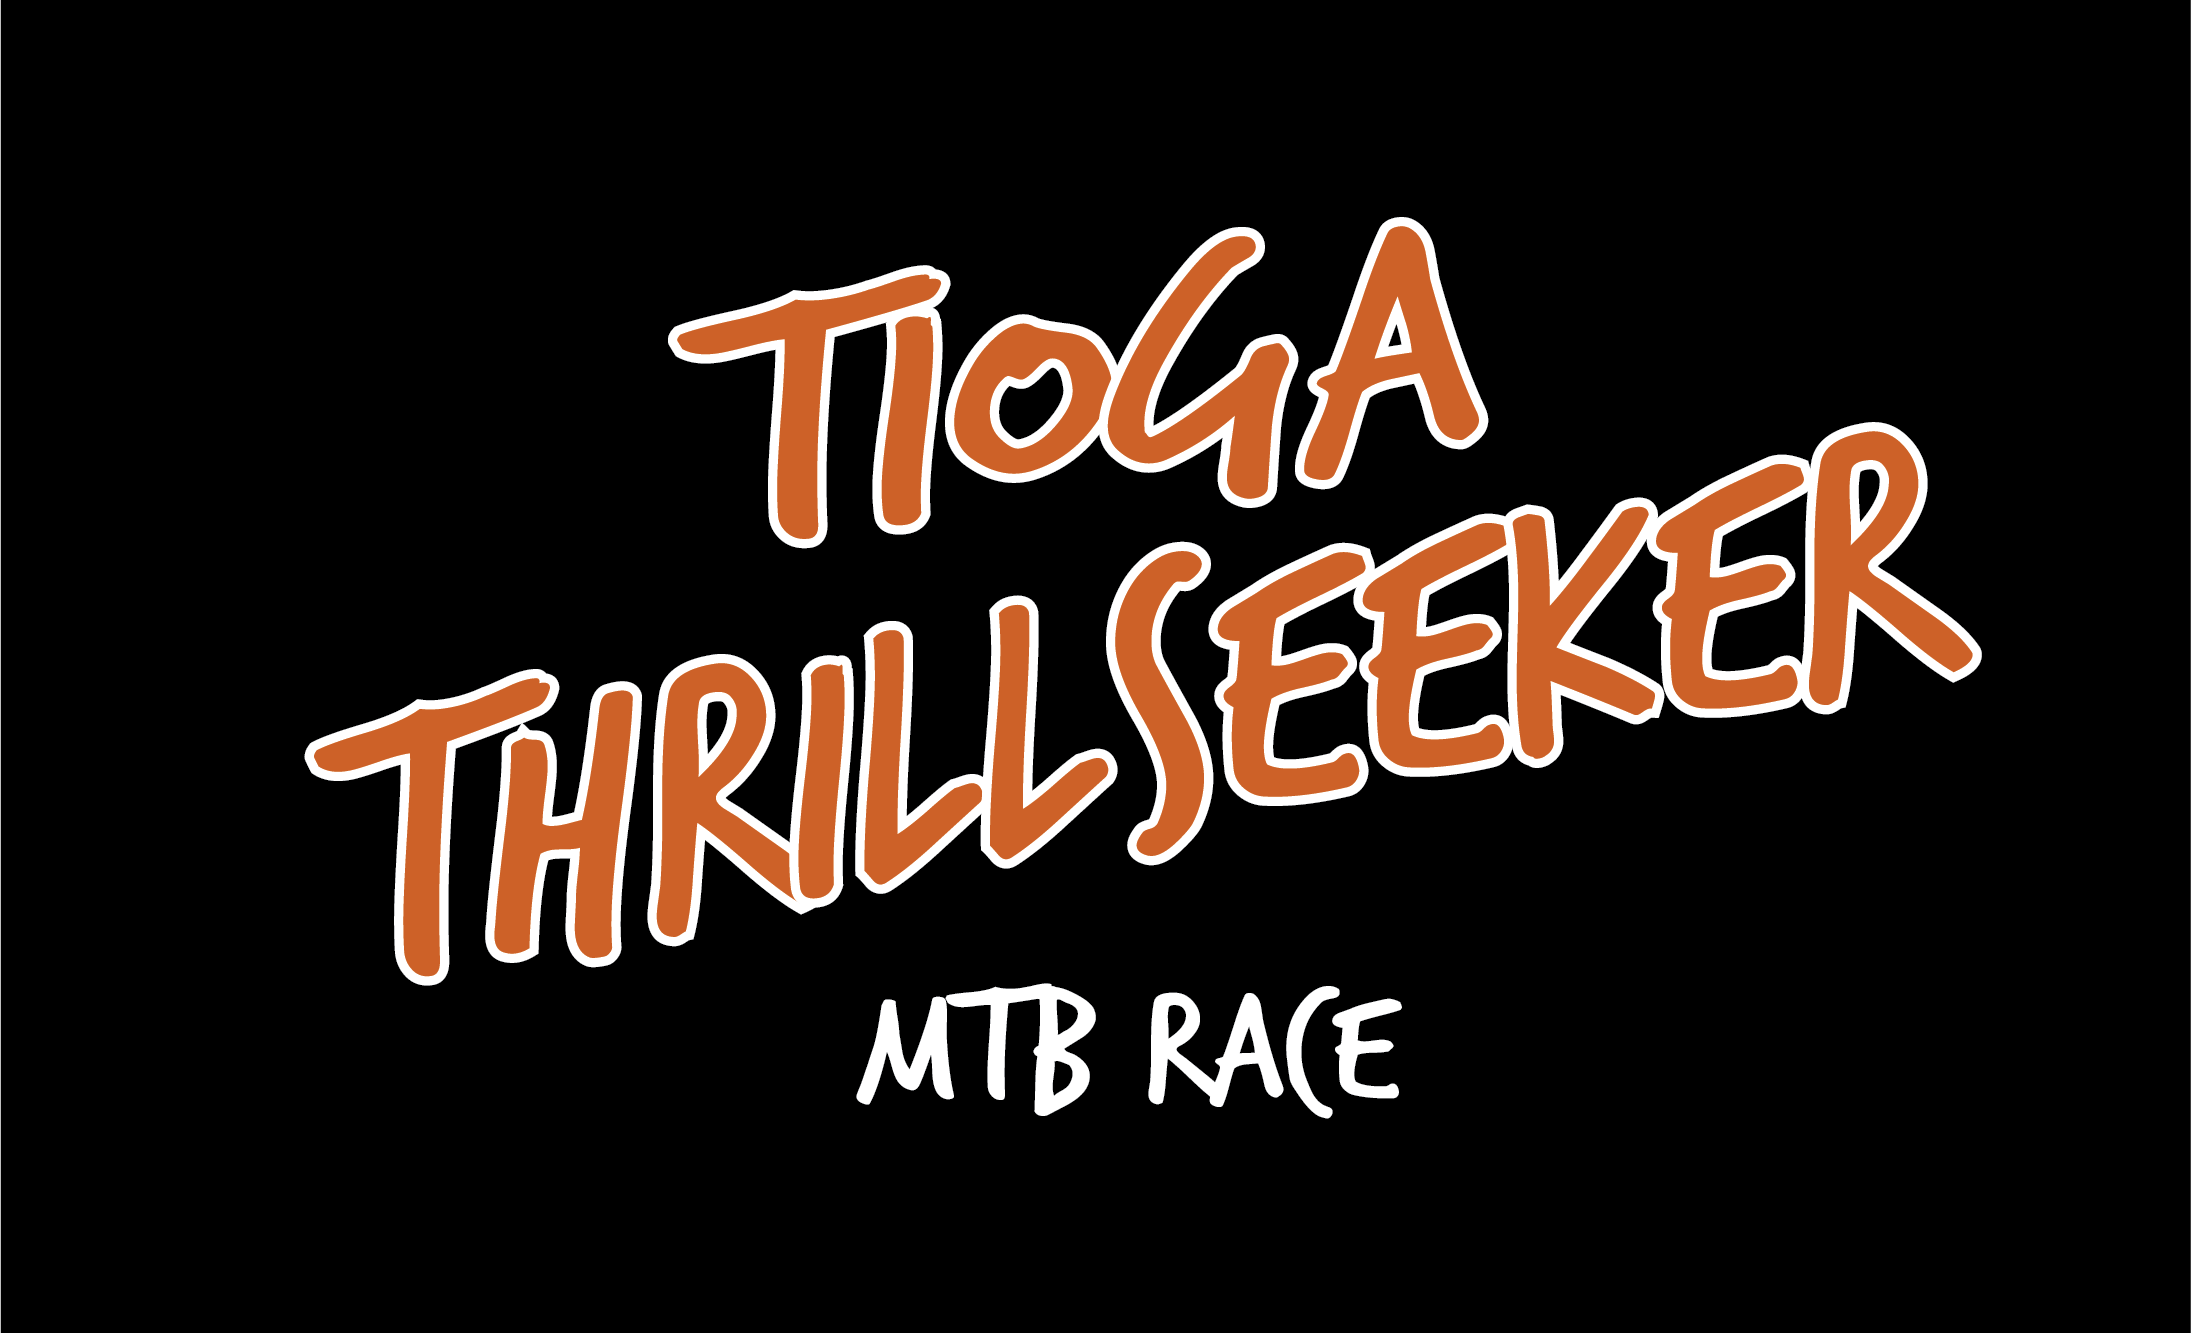 Tioga Thrillseeker MTB Race